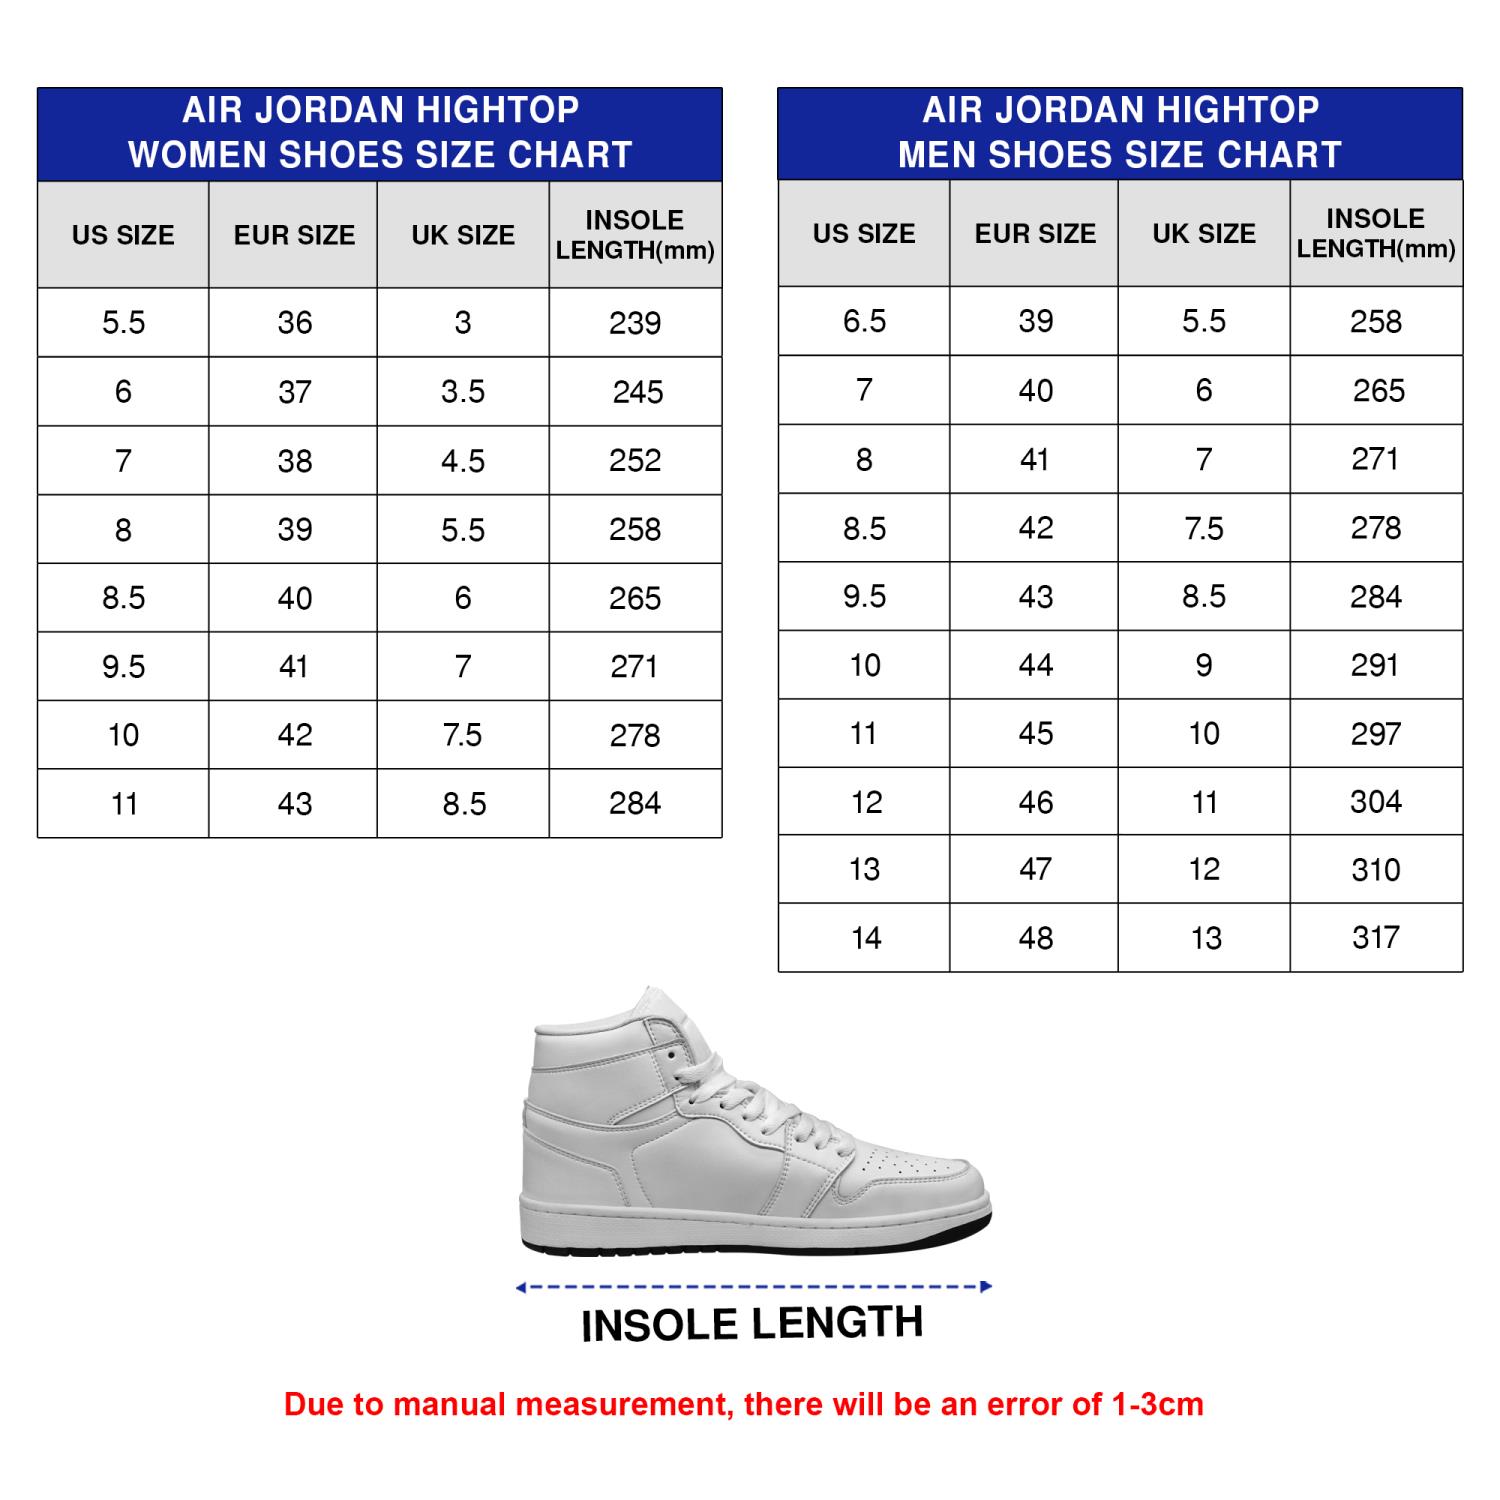 Chicago Bulls NBA Custom Name Air Jordan 1 High Top Shoes For Men Women -  Banantees